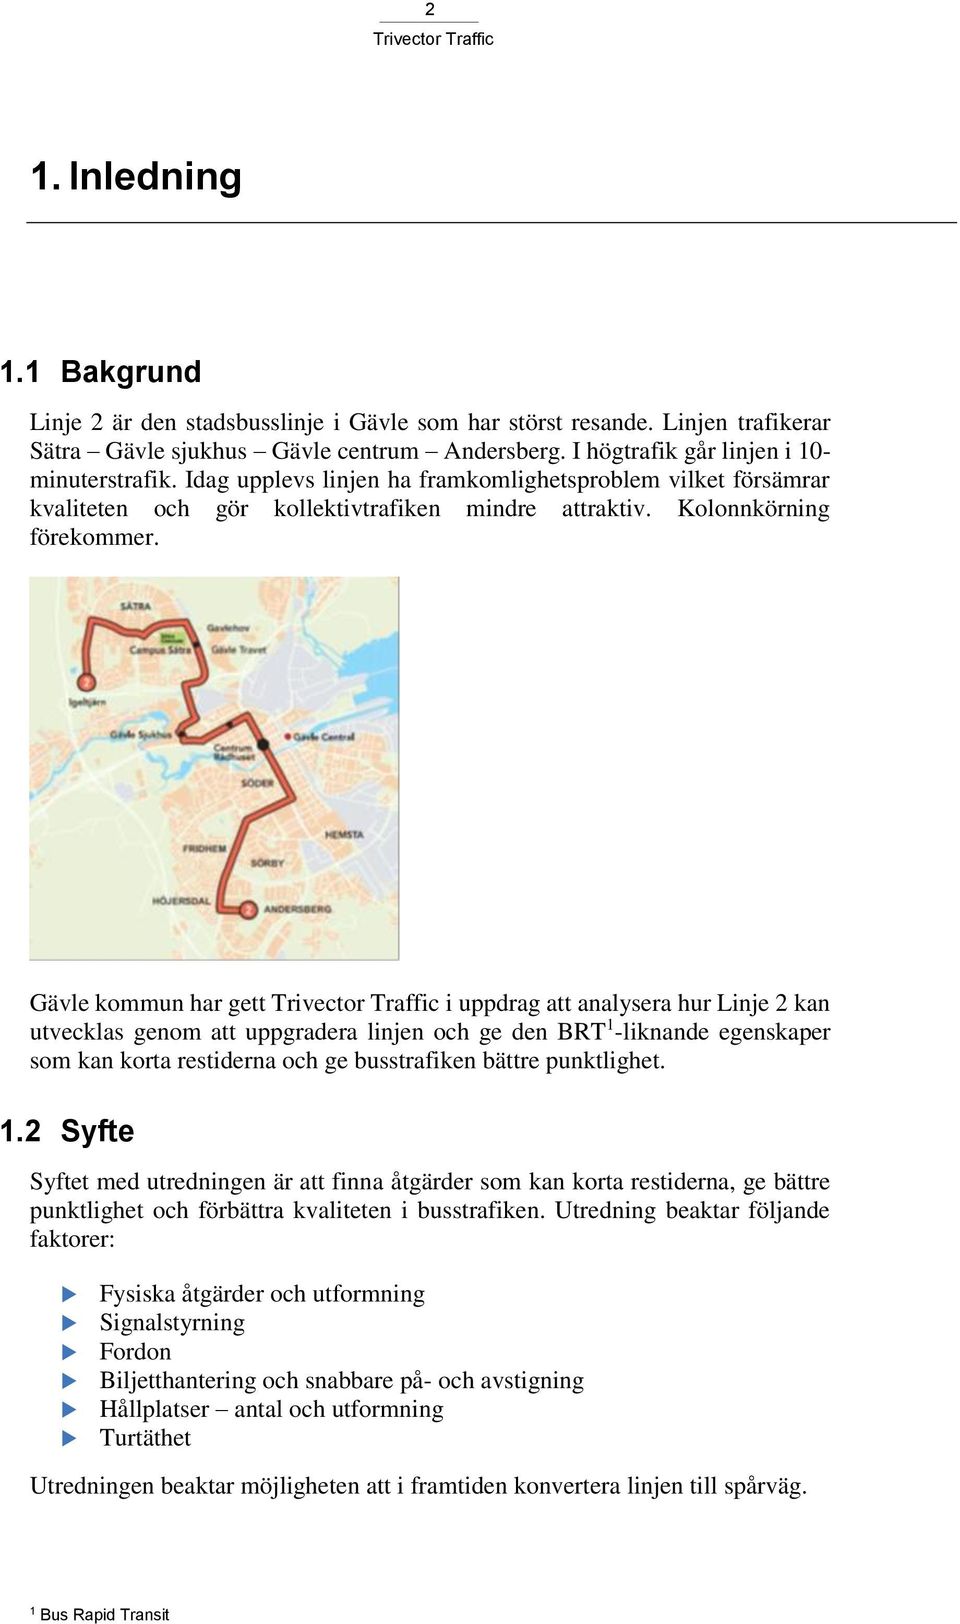 Gävle kommun har gett i uppdrag att analysera hur Linje 2 kan utvecklas genom att uppgradera linjen och ge den BRT 1 -liknande egenskaper som kan korta restiderna och ge busstrafiken bättre